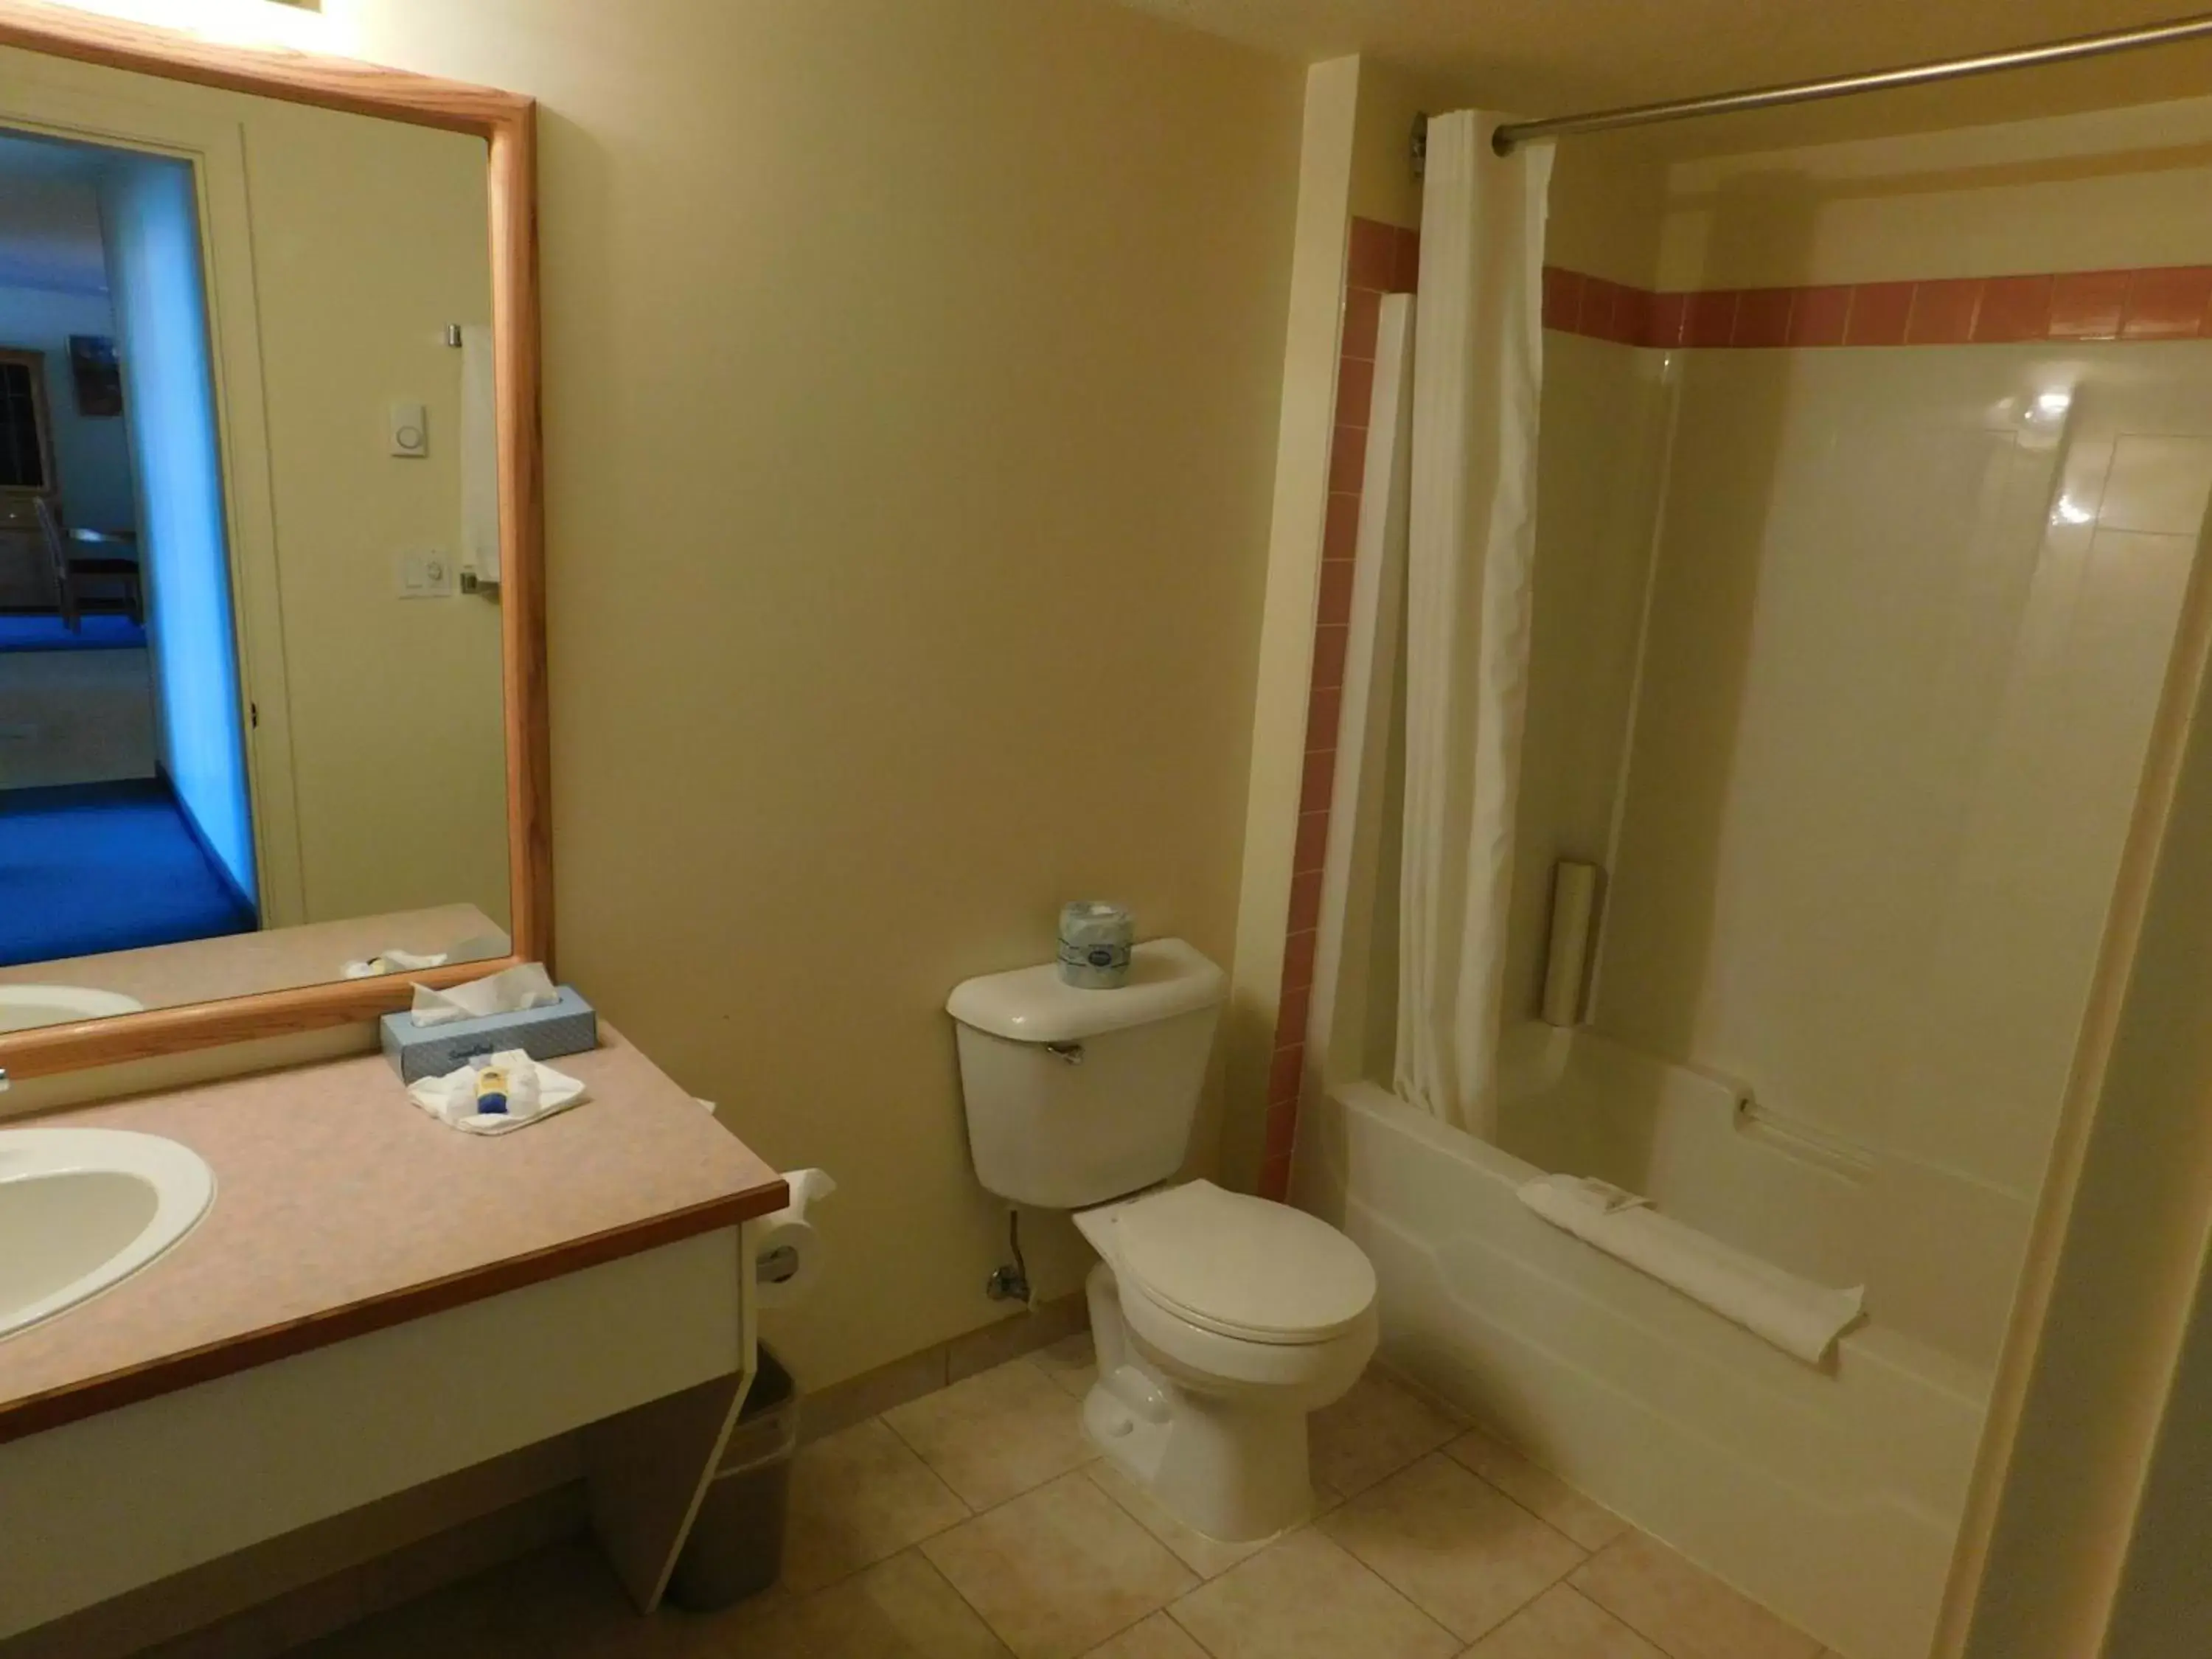 Bathroom in Western Budget Motel Leduc #3